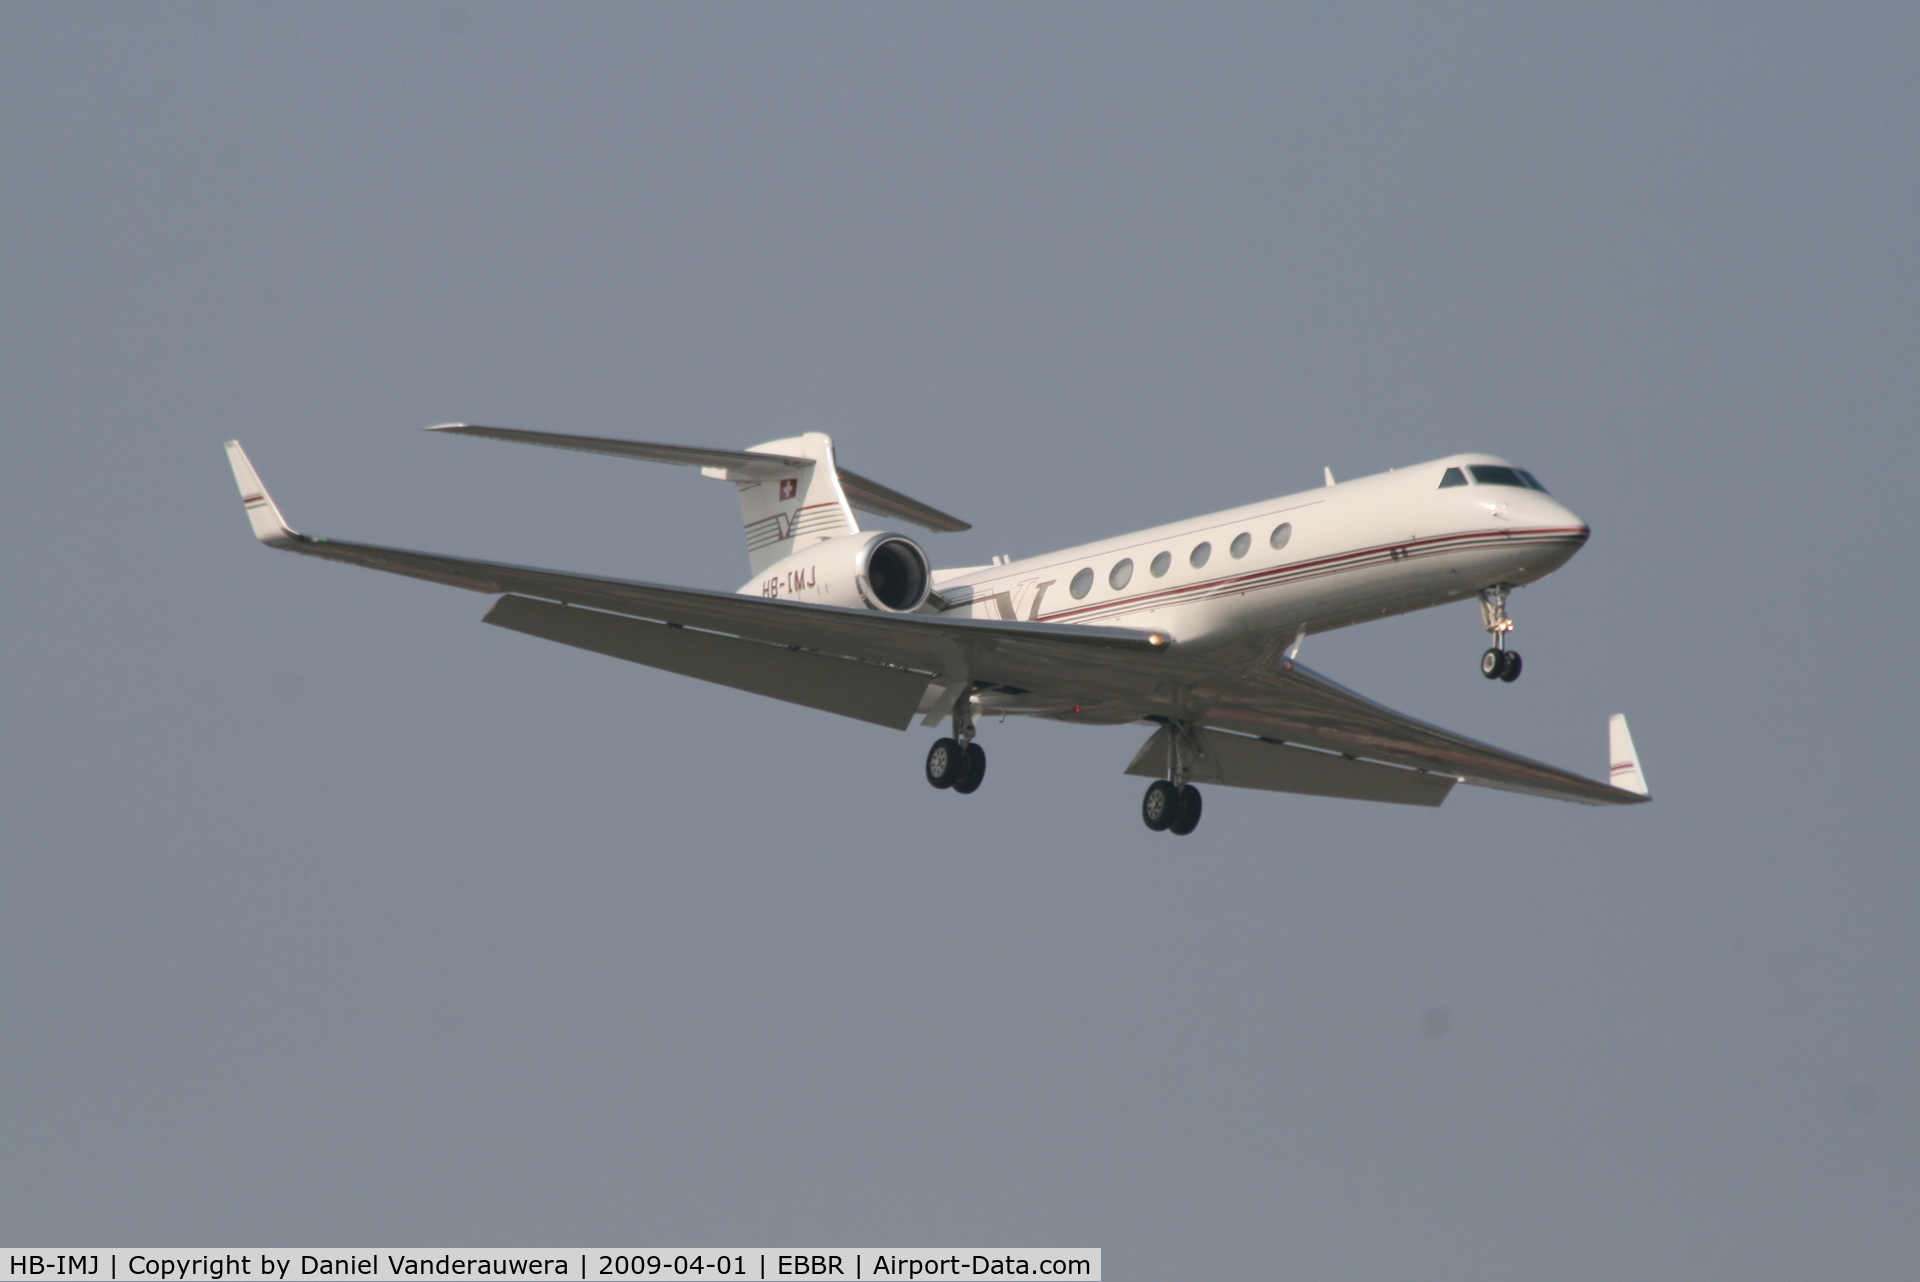 HB-IMJ, 1997 Gulfstream Aerospace Gulfstream V C/N 517, On approach to RWY 02